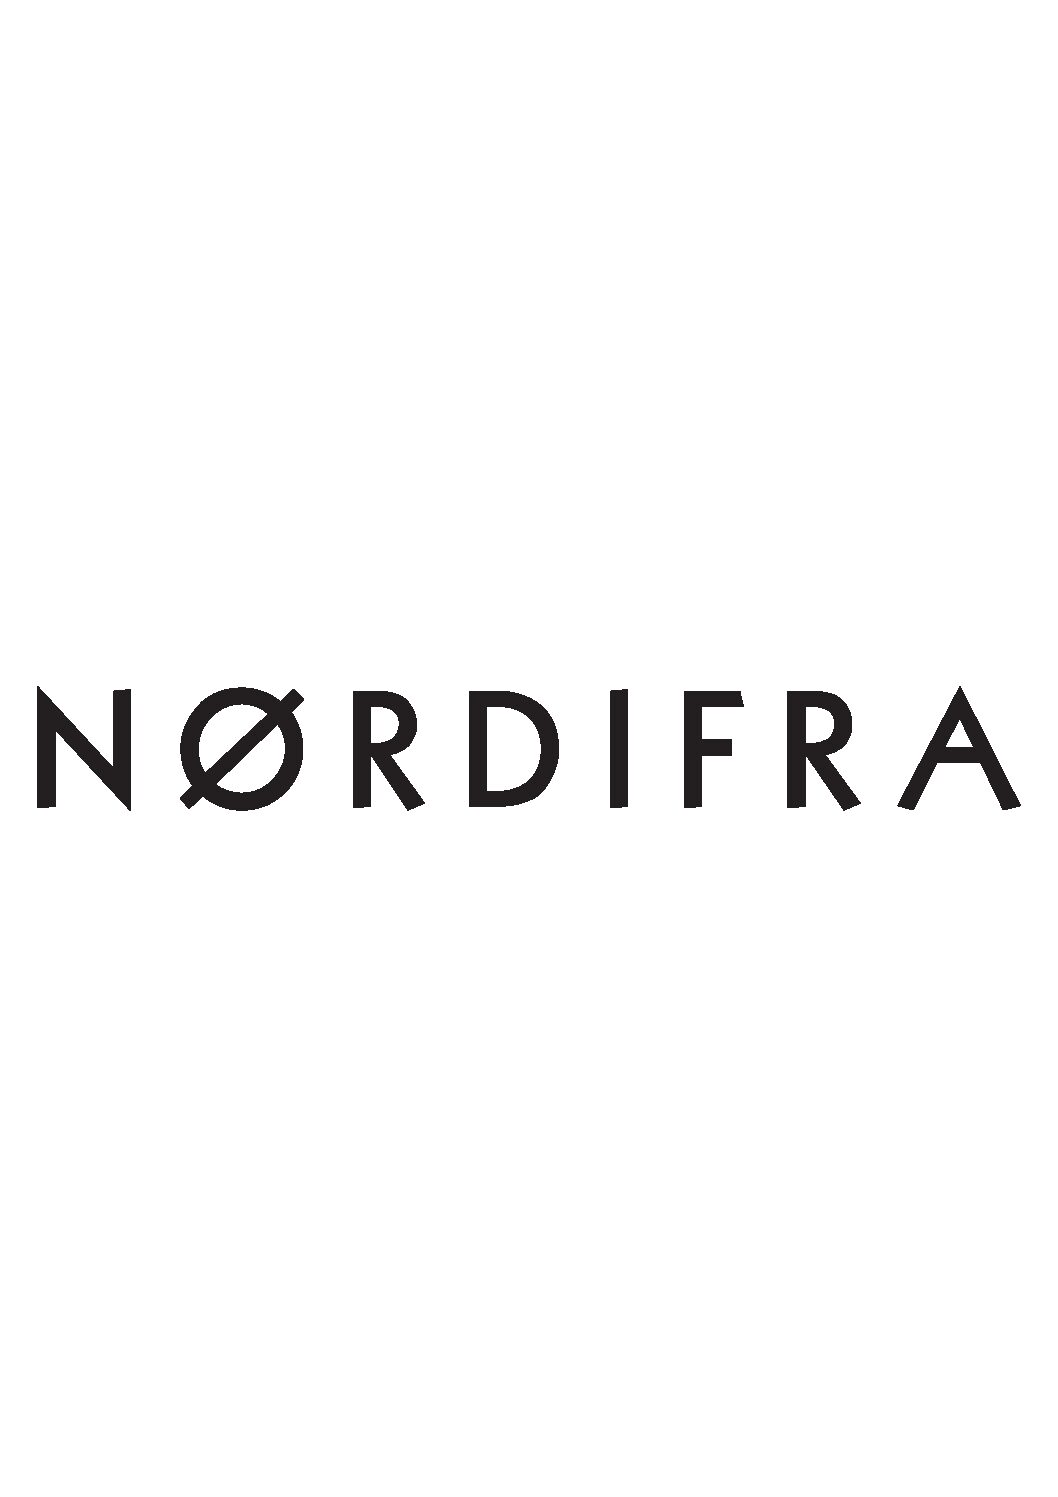 nordifra_logo